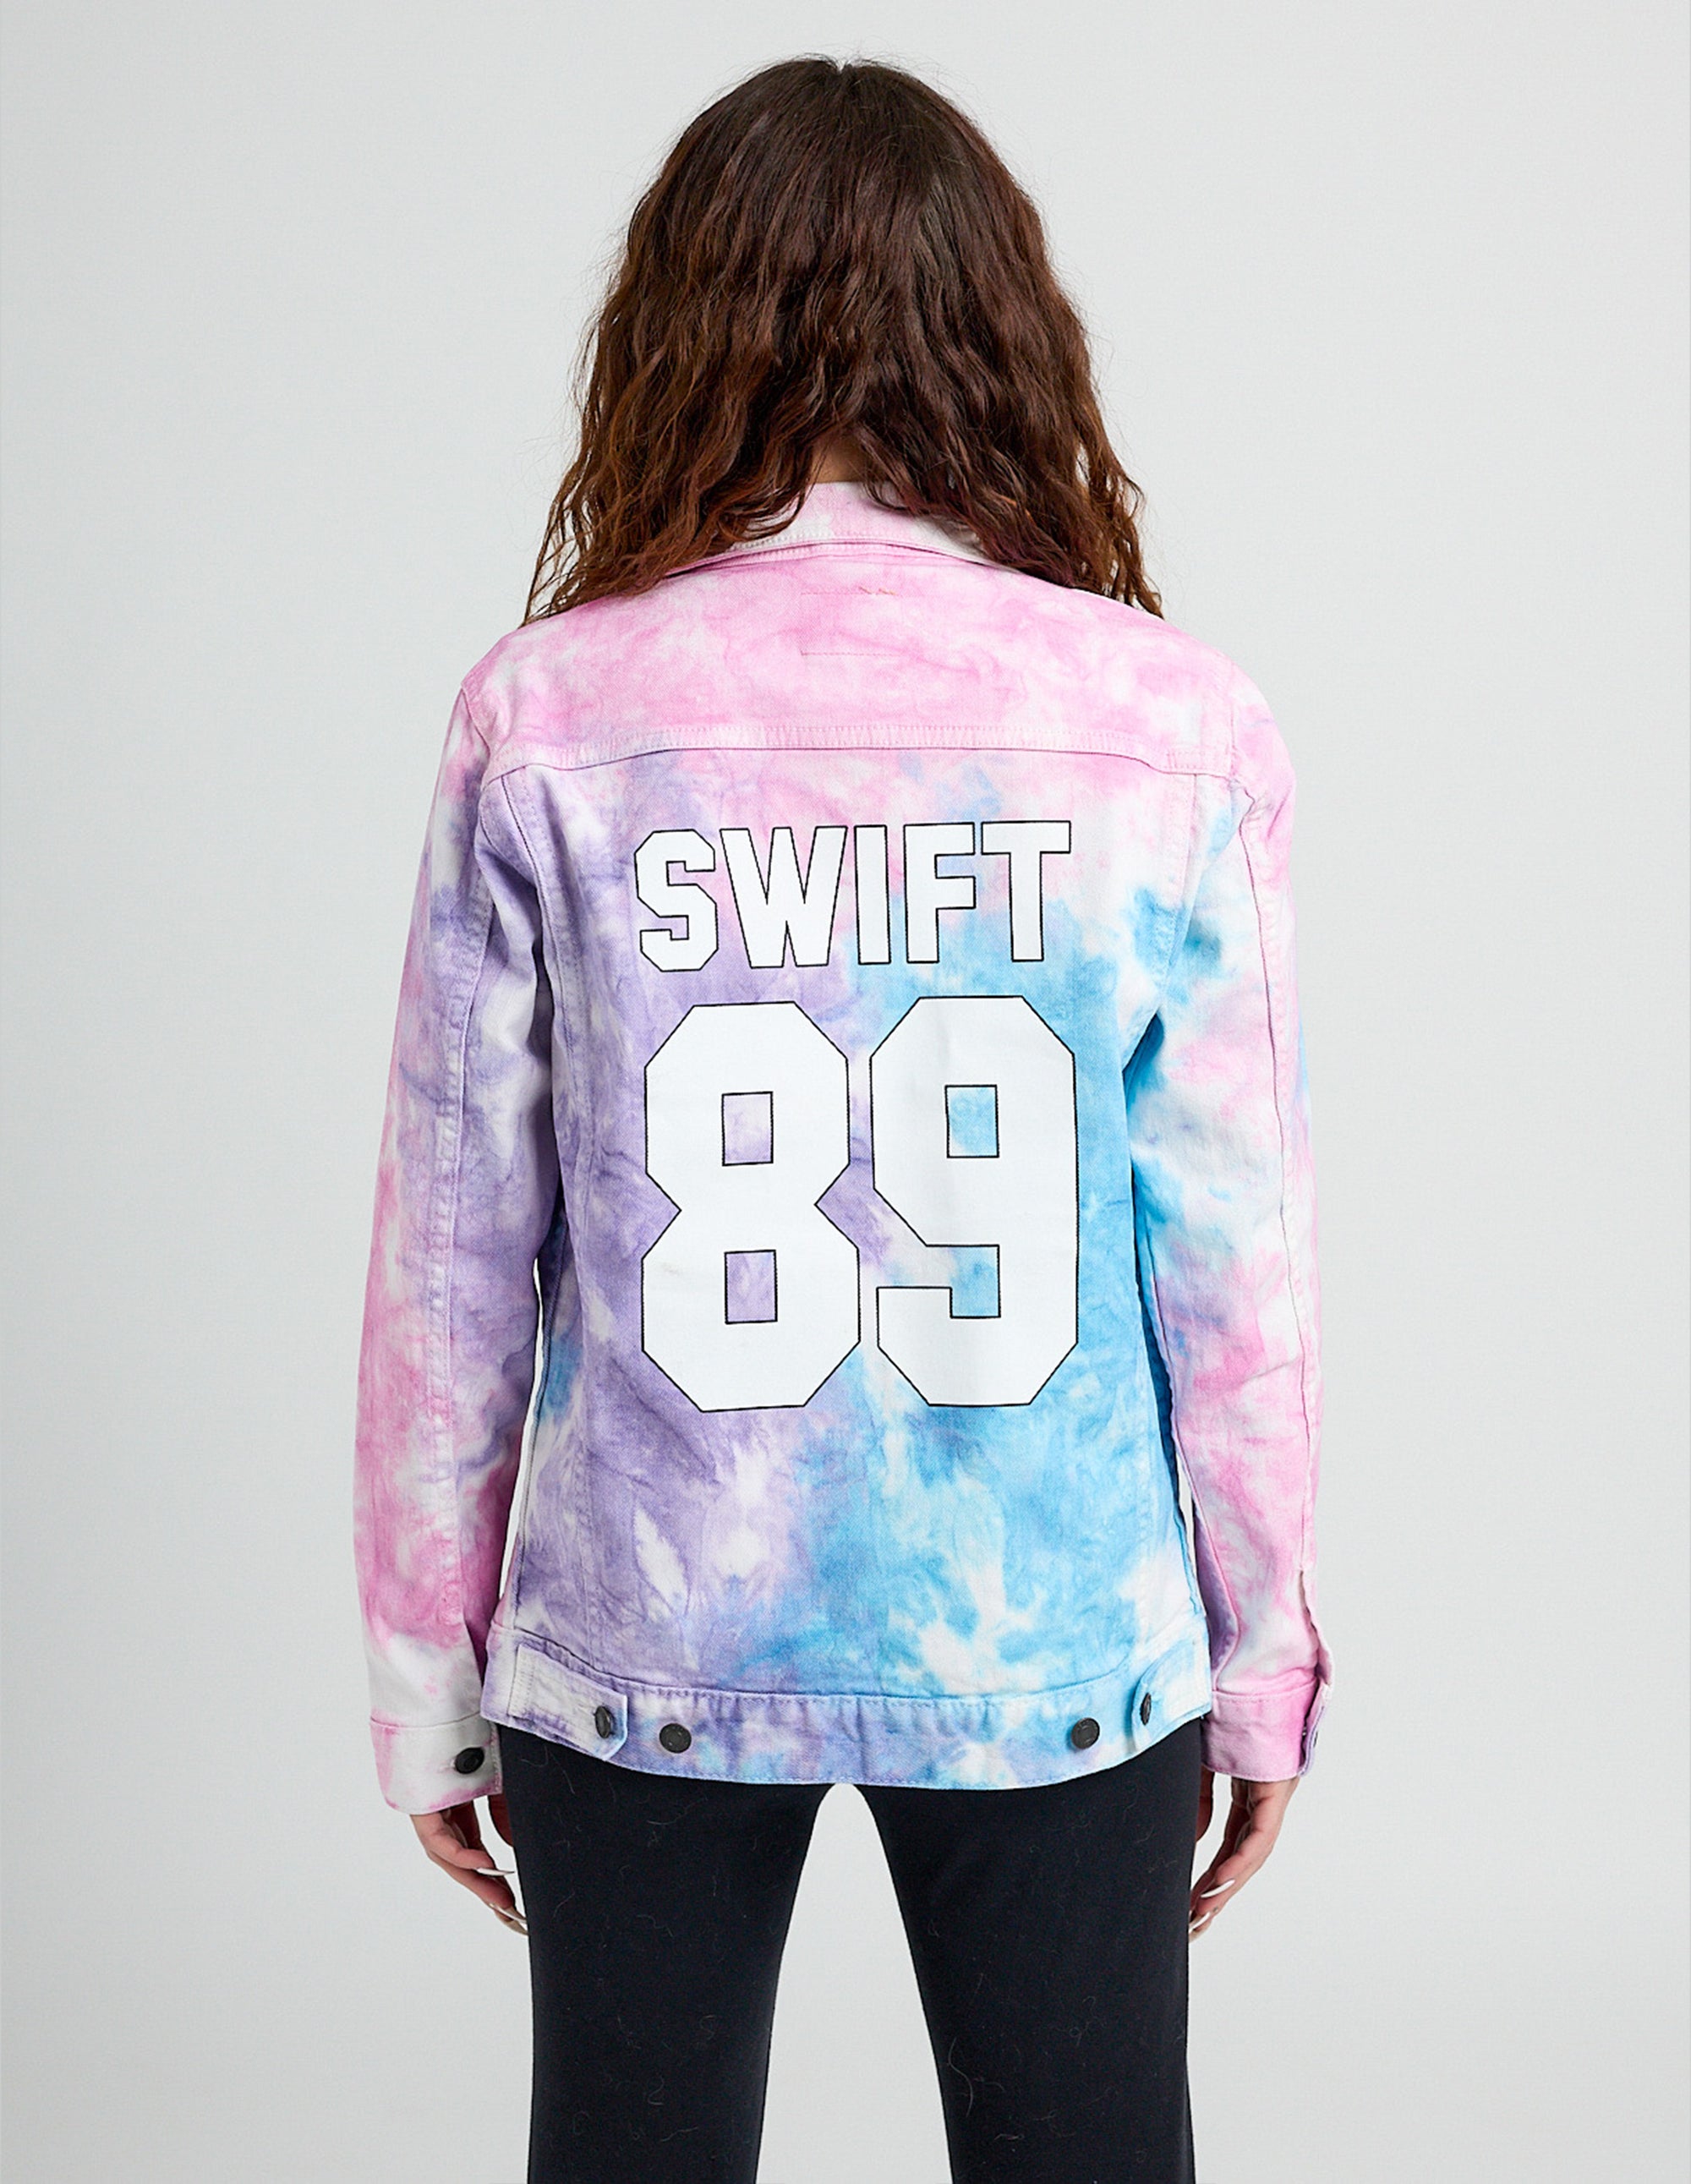 Swift 89 Birth Year Music Fan Lover Era Tie-Dye Denim Jacket